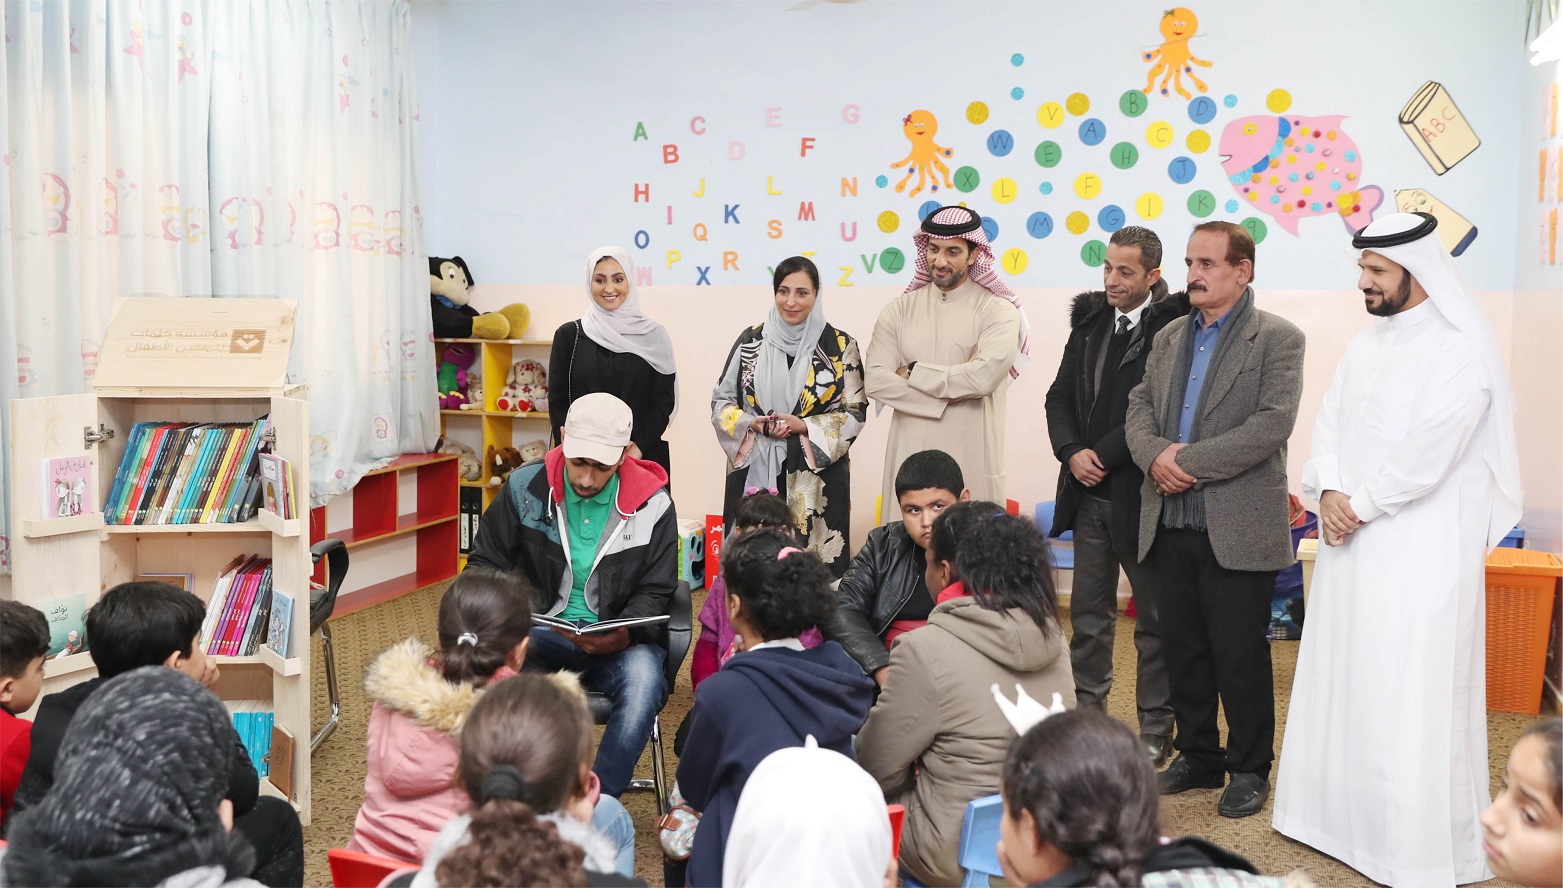 إهداء 700 كتاب إلى 7 مدارس فى الأردن لدعم اللاجئين والنازحين (5)